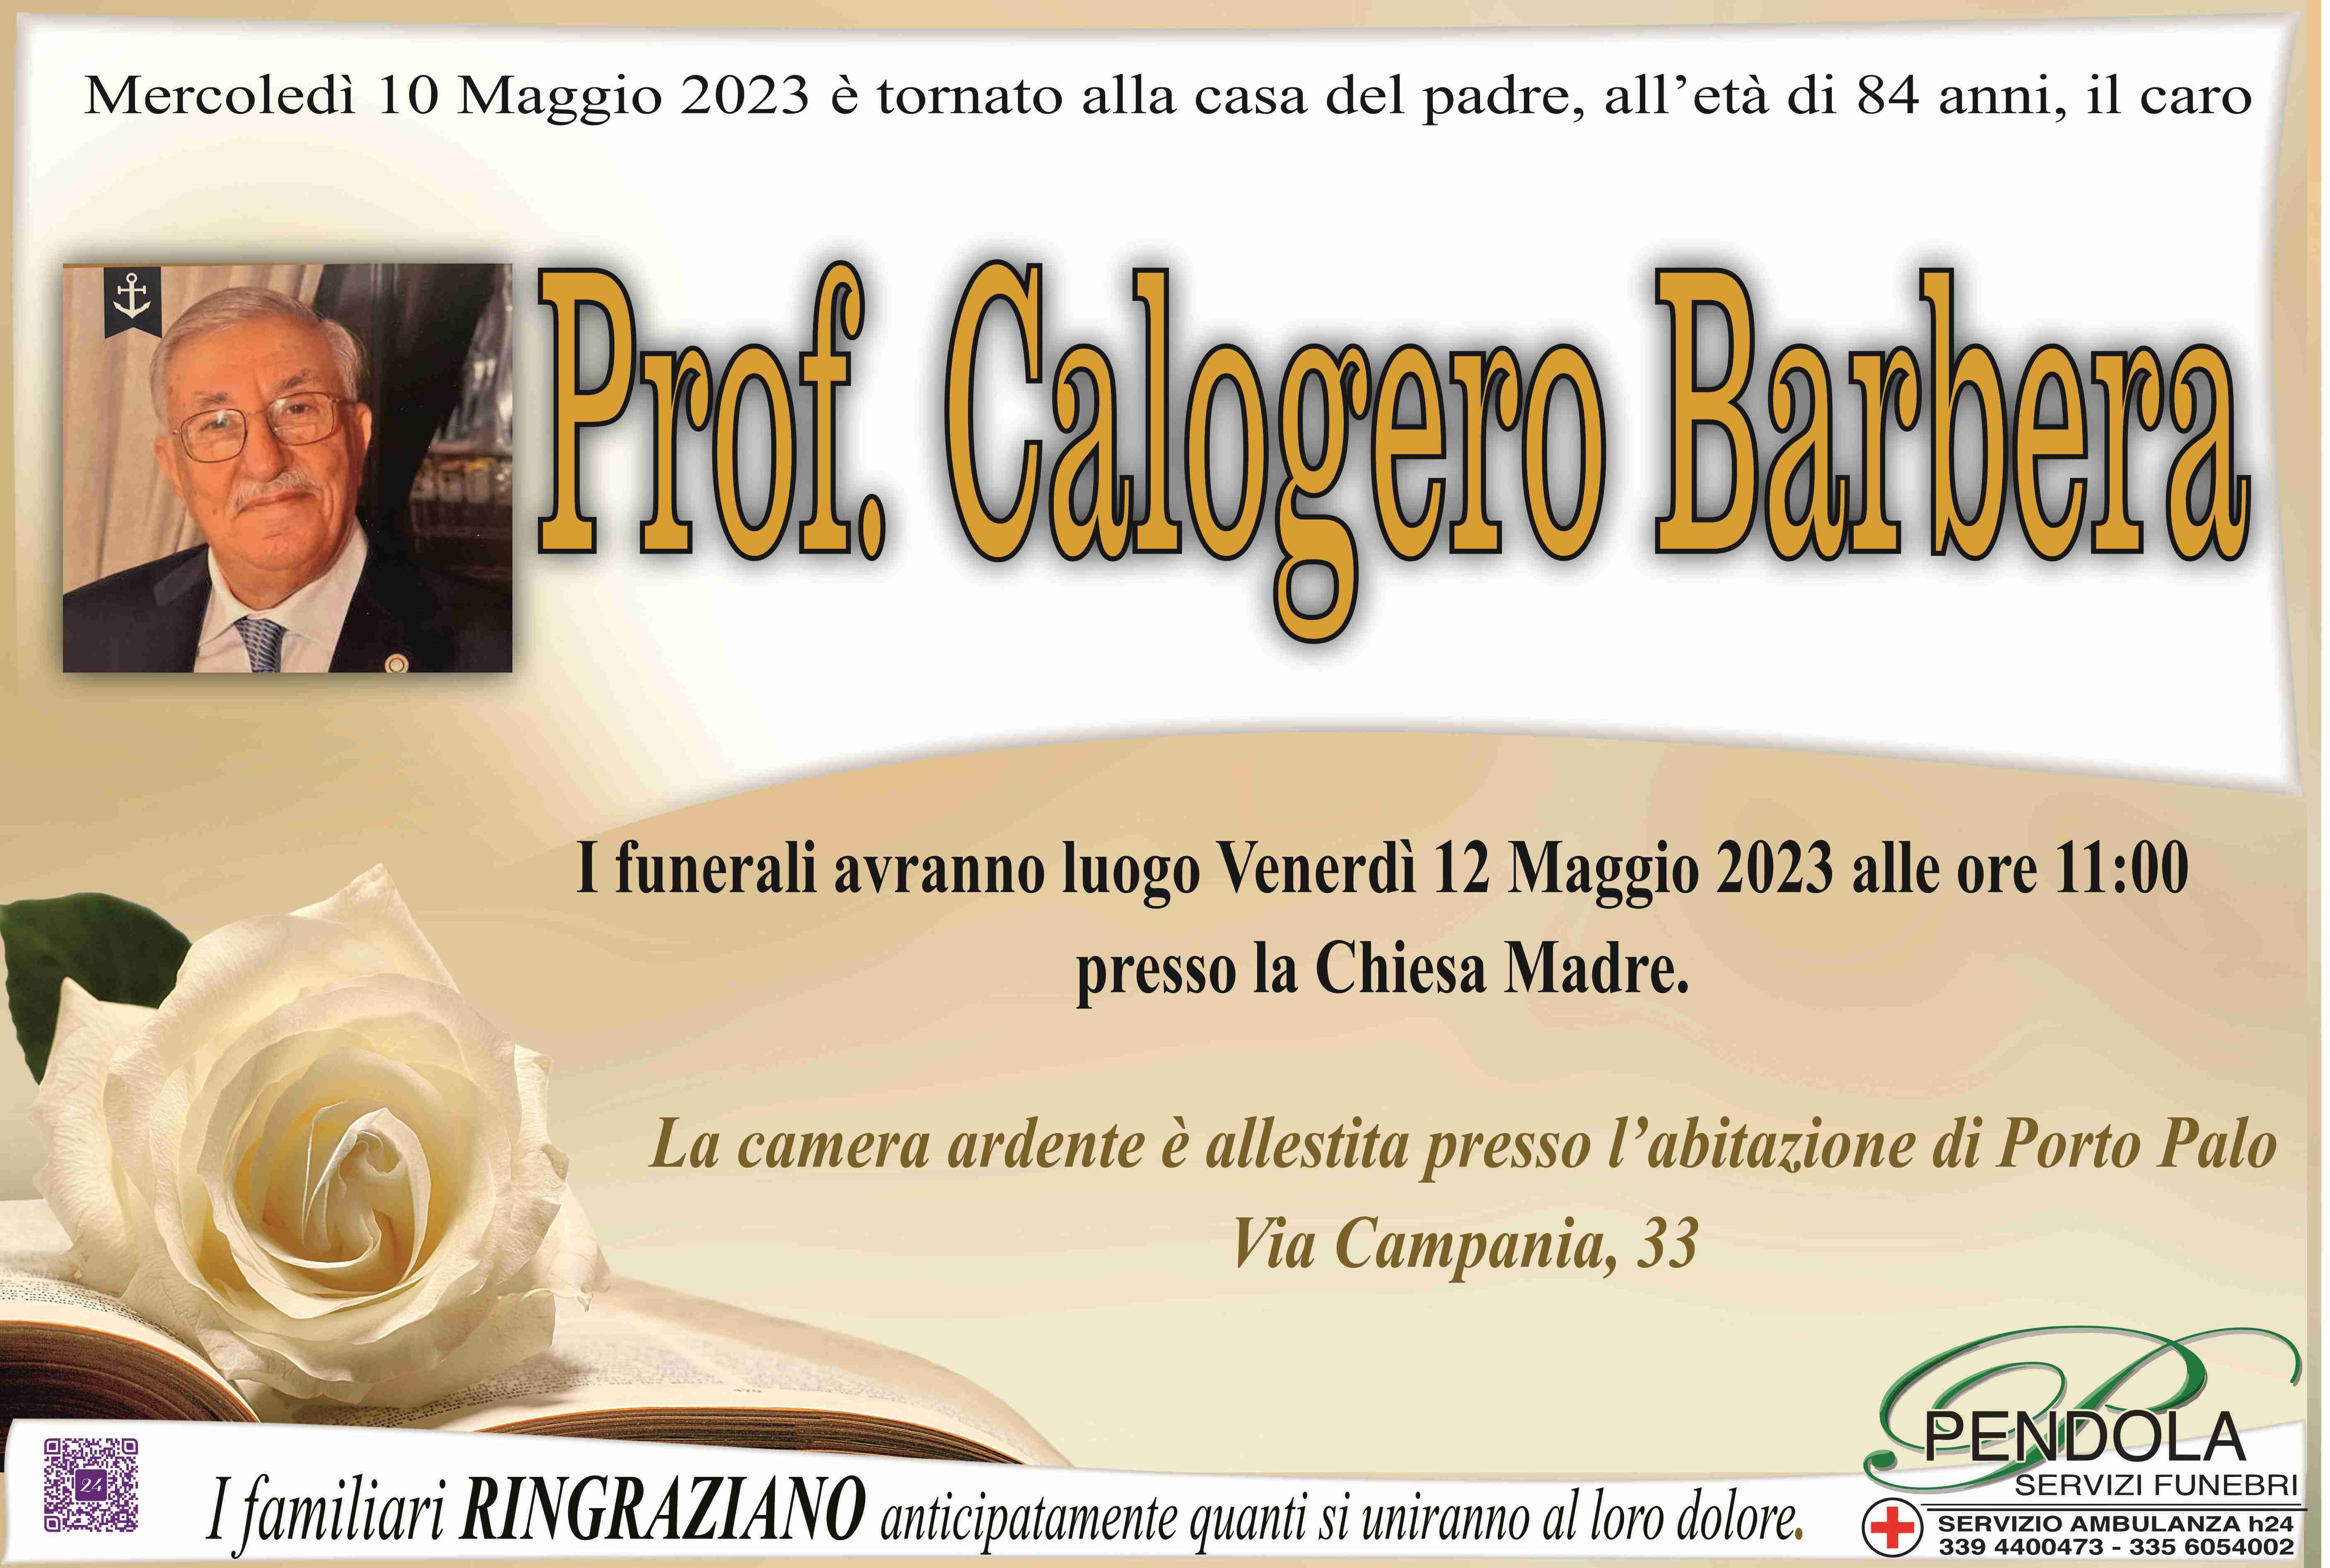 Calogero Barbera